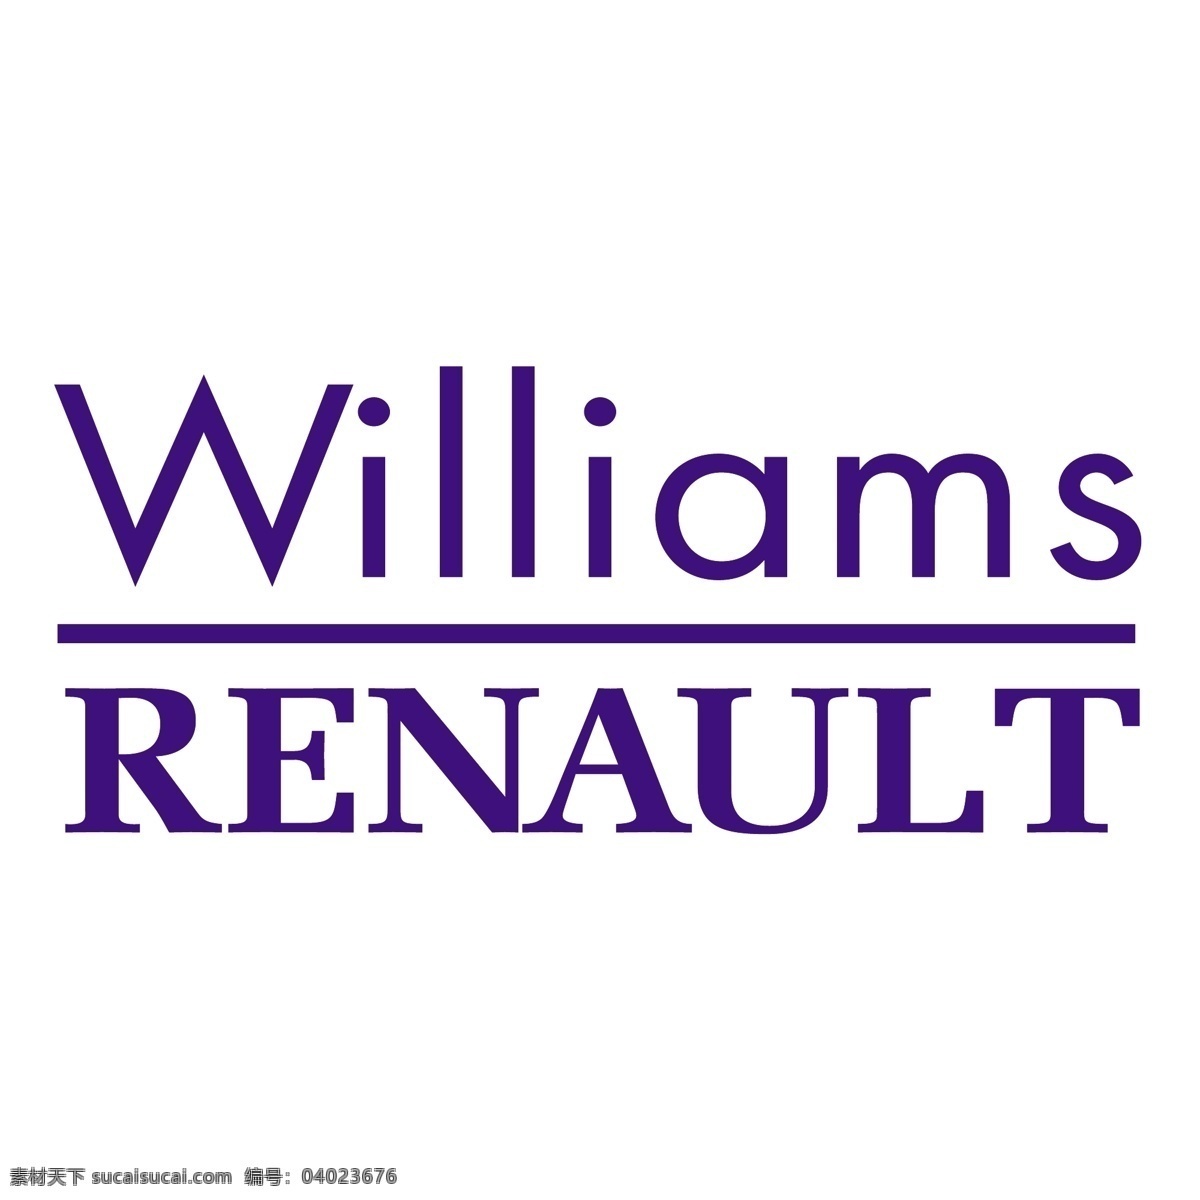 威廉姆斯 车队 f1 自由 雷诺 标识 psd源文件 logo设计